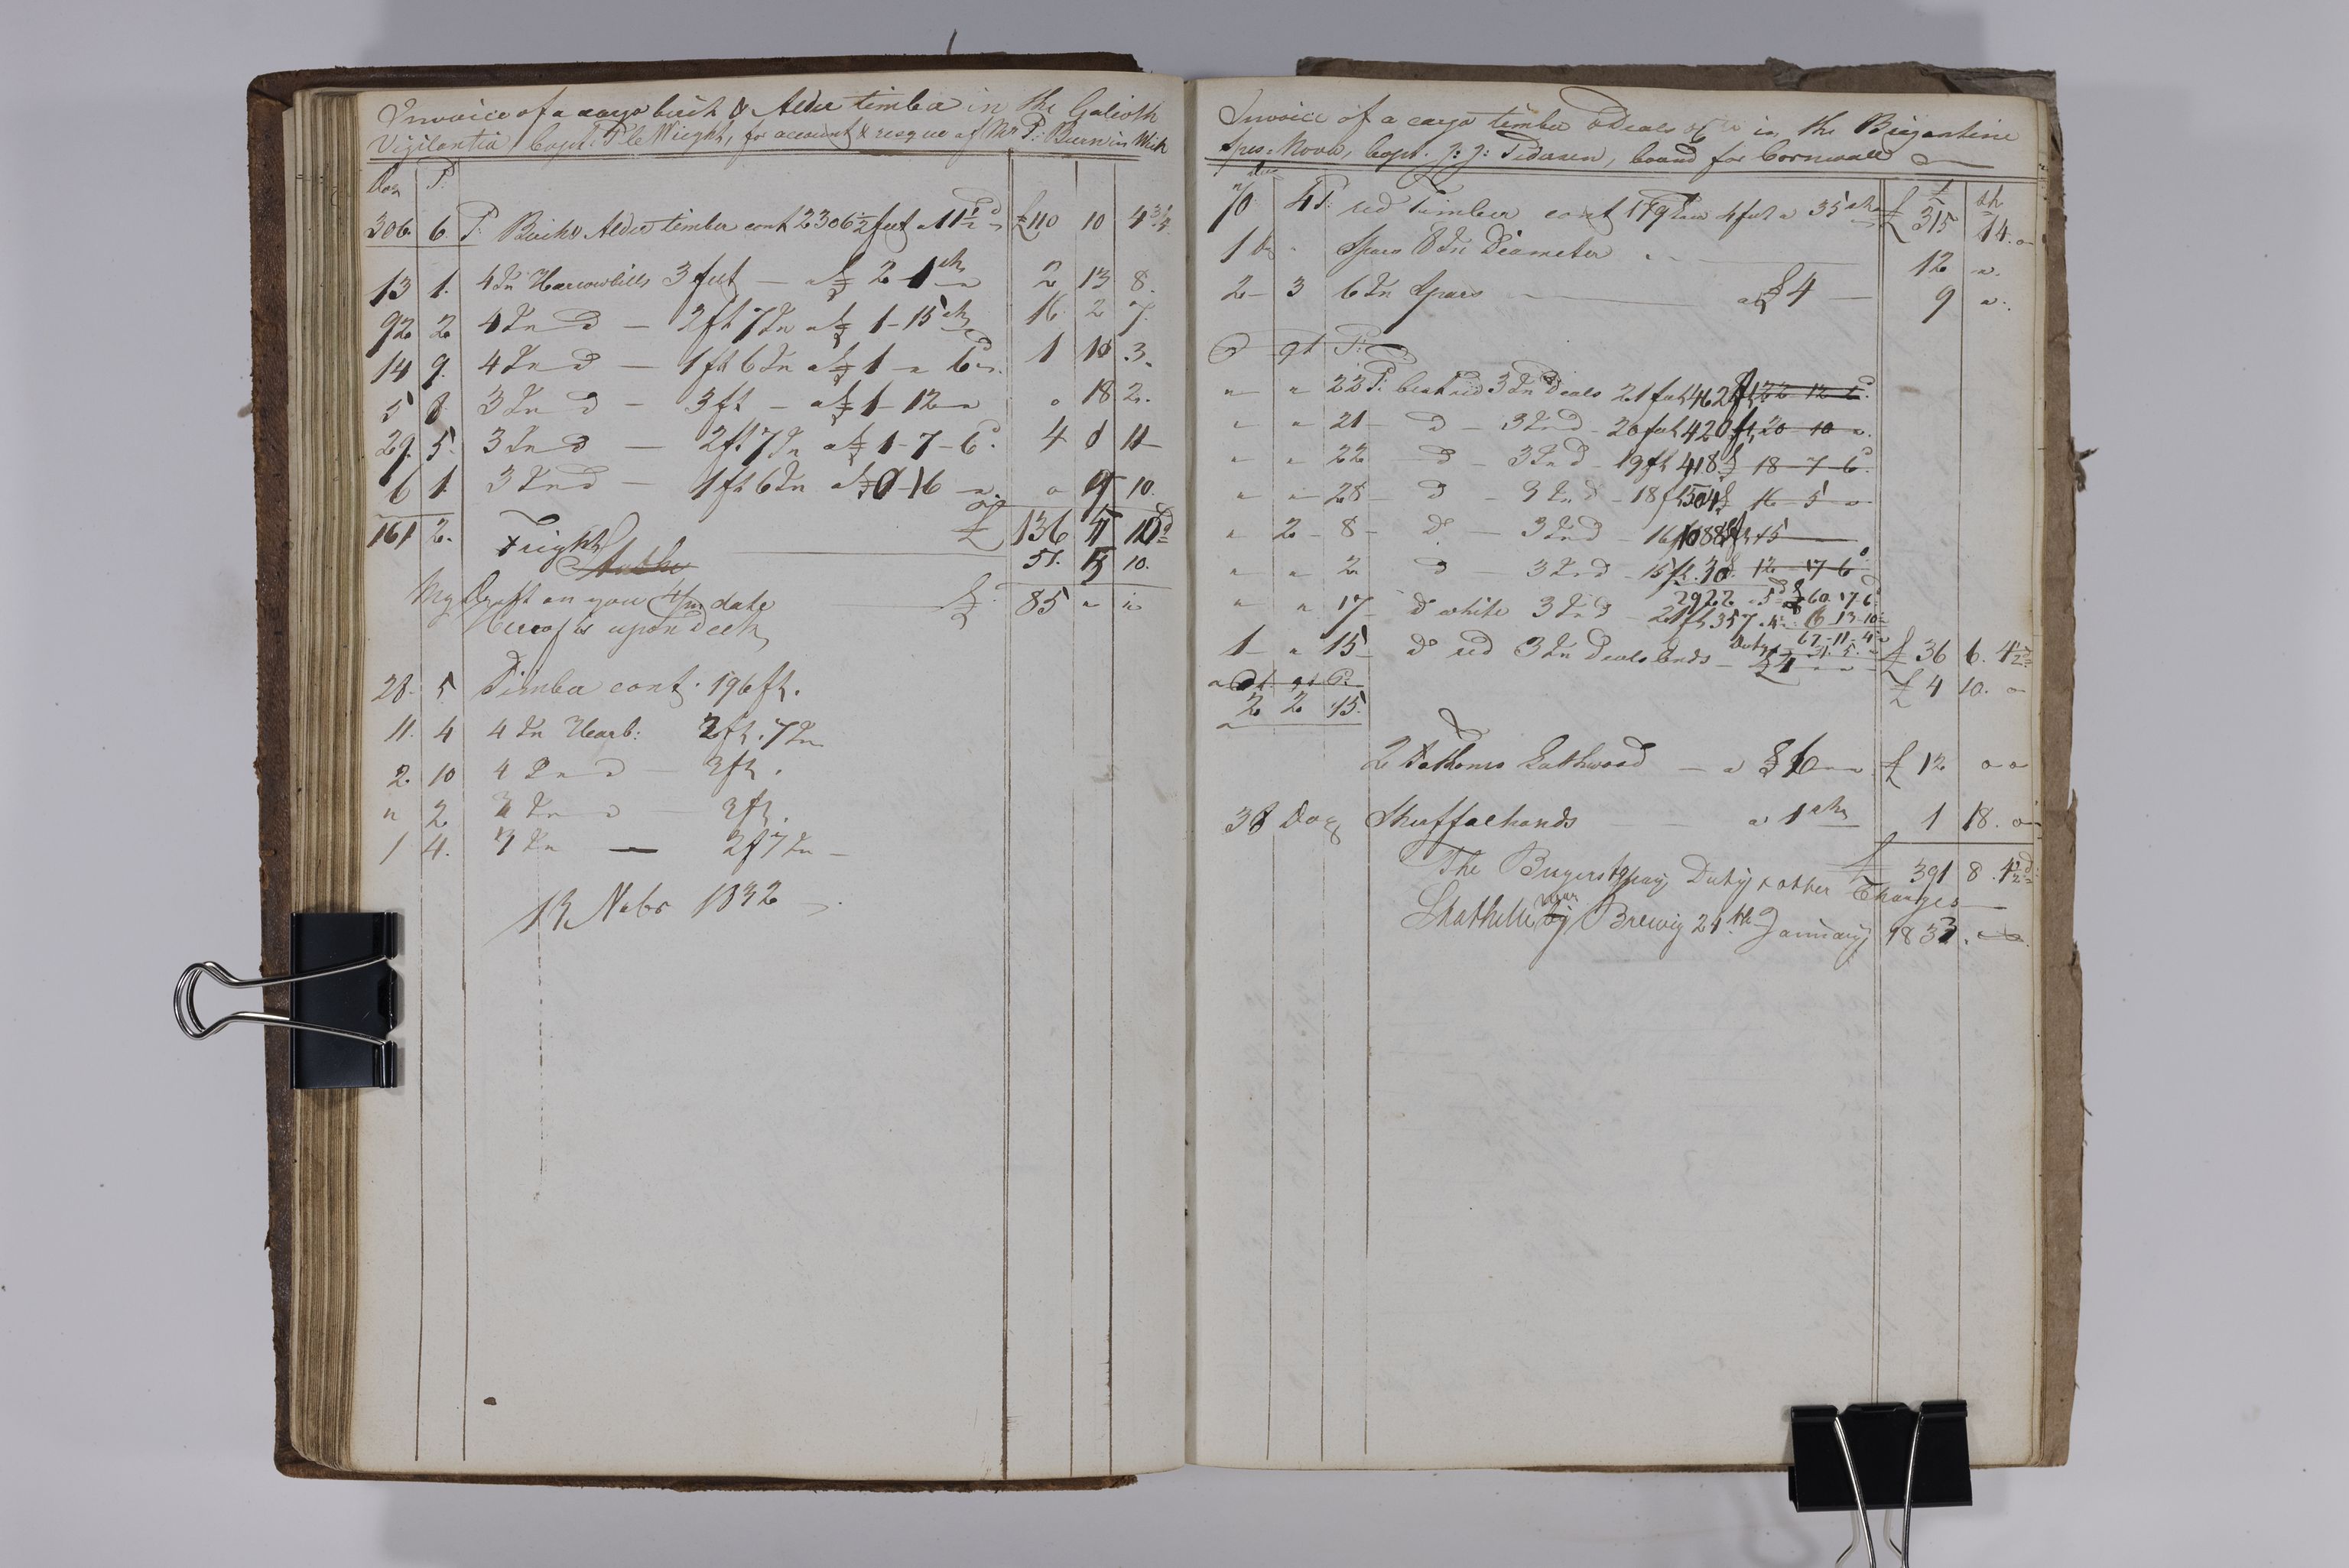 , Priscourant-tømmerpriser, 1834-38, 1834-1838, s. 58